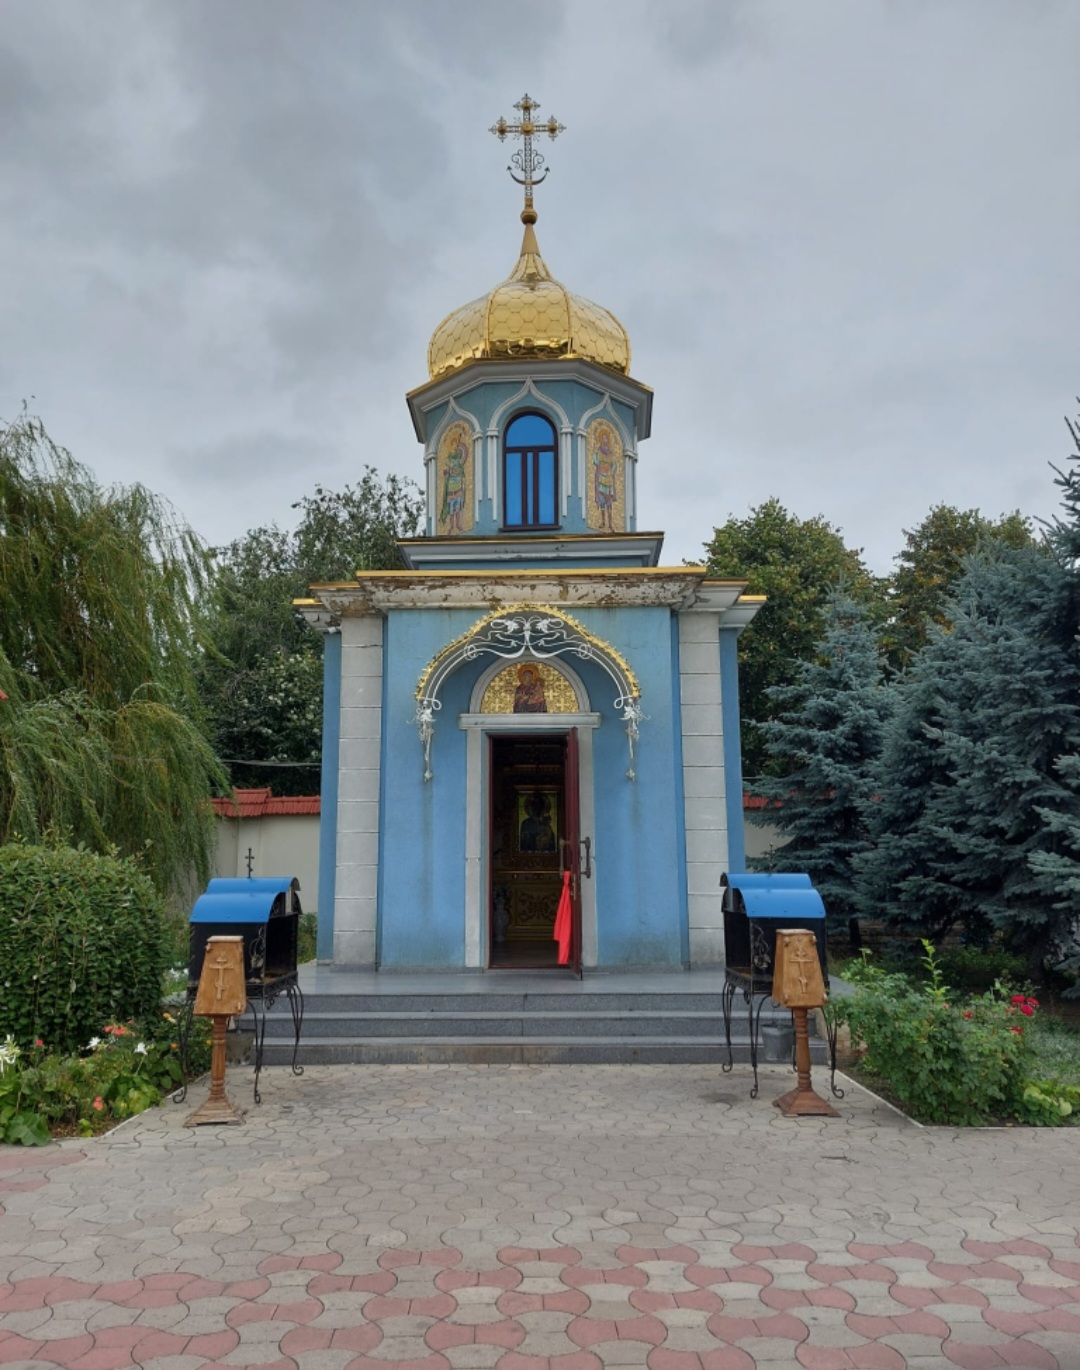 Visiter Chișinău et son architecture communiste